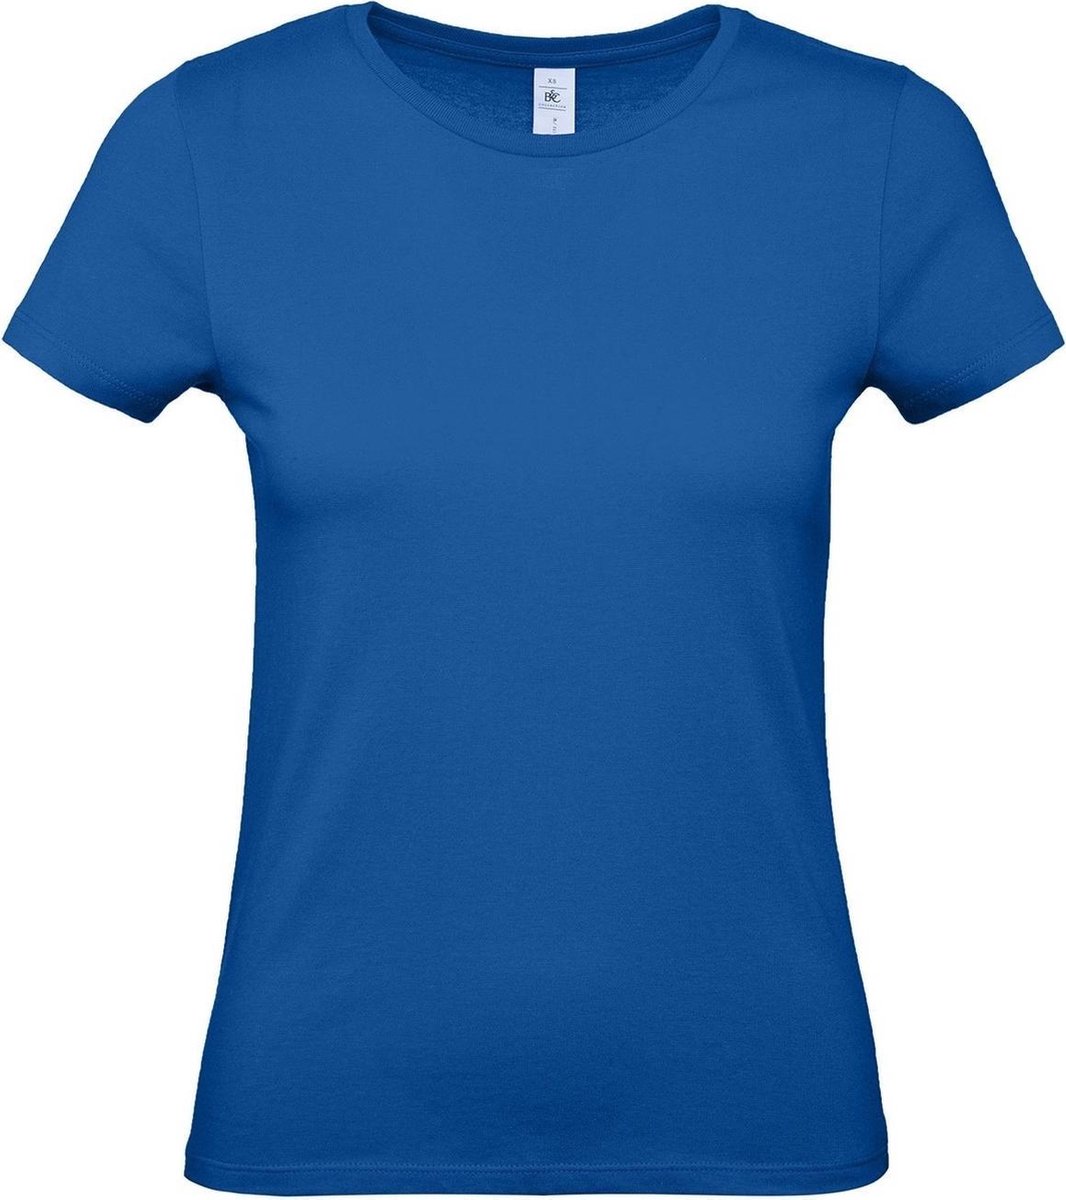 Set van 3x stuks blauw basic t-shirts met ronde hals voor dames - katoen - 145 grams - blauwe shirts / kleding, maat: XS (34)